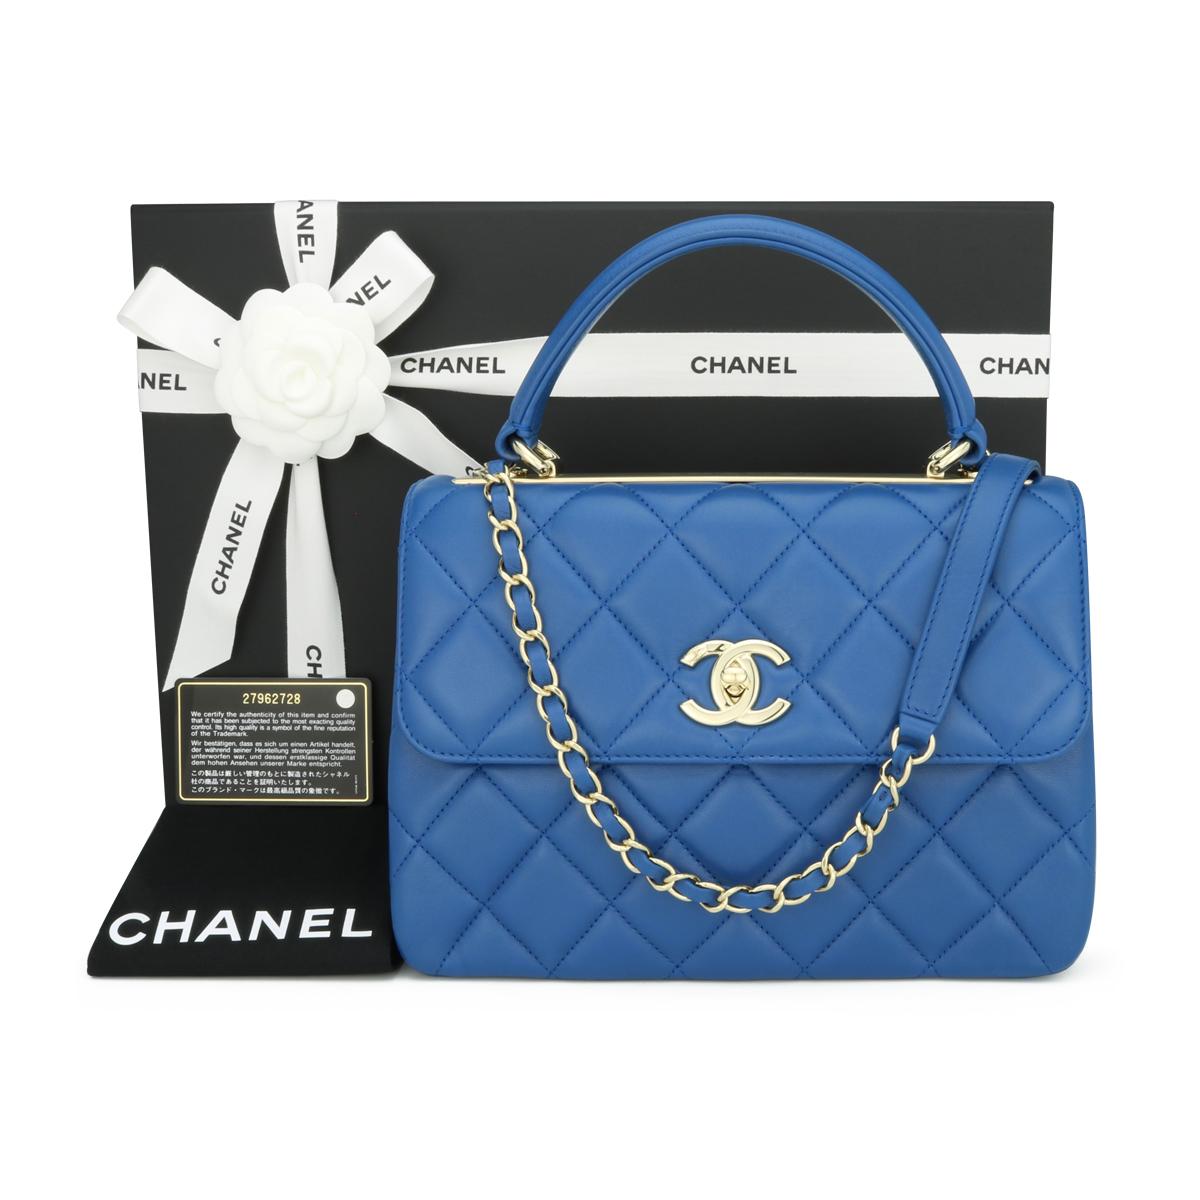 CHANEL Trendy CC Top Handle Bag Small Blue Lambskin with Light Gold Hardware 2019 - 19S.

Ce superbe sac est en très bon état, le sac conserve sa forme d'origine et le matériel est encore très brillant. Le cuir sent le frais, comme s'il était